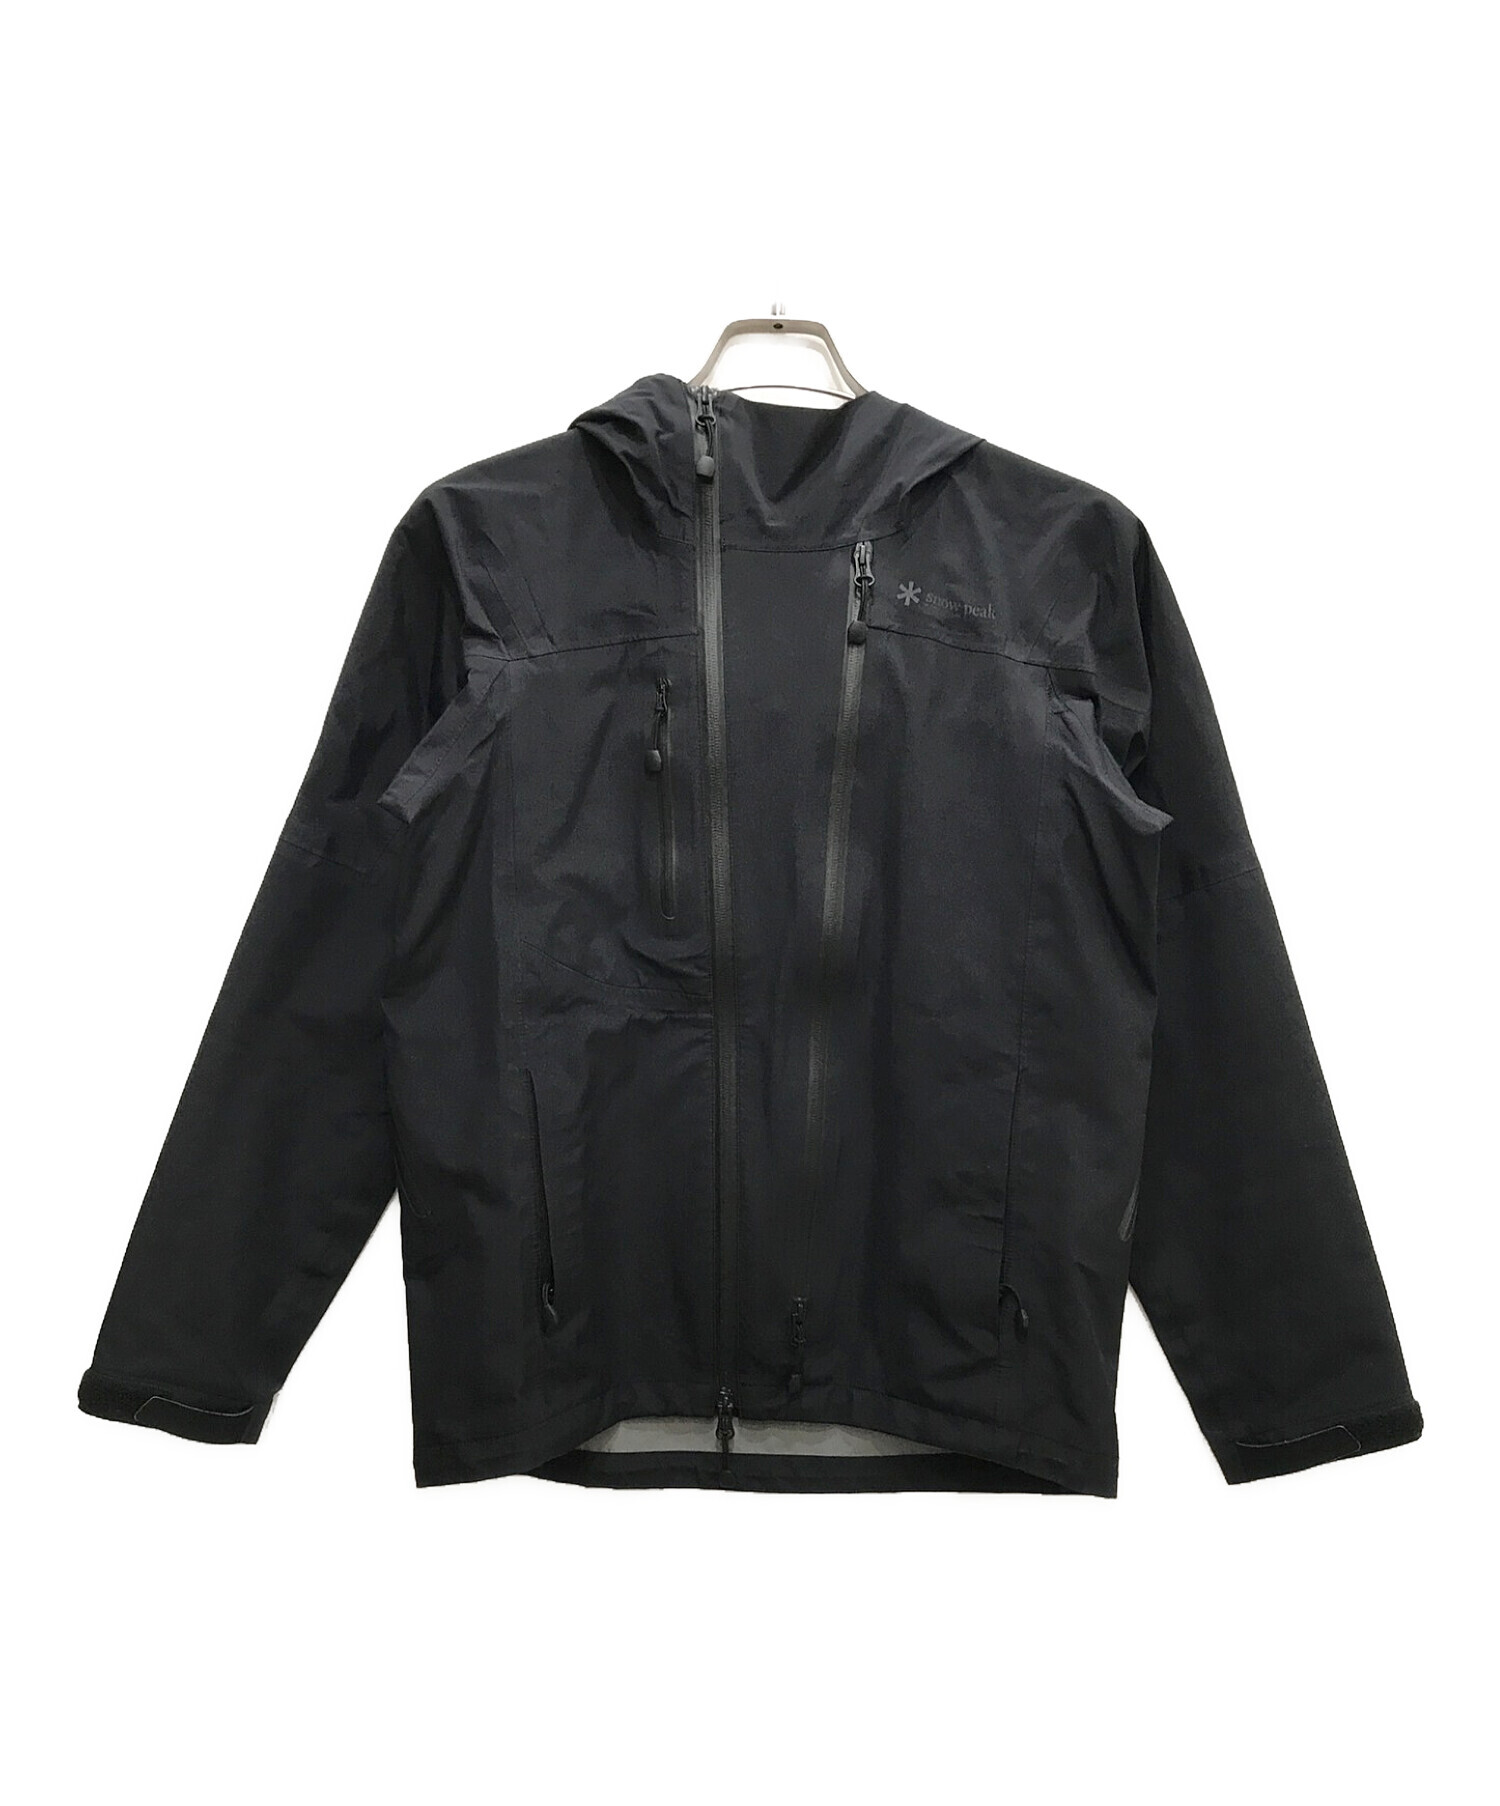 メンズ snow peak 長袖ジャケット Sサイズ ブラック - ジャケット ...カラーブラック 7080円